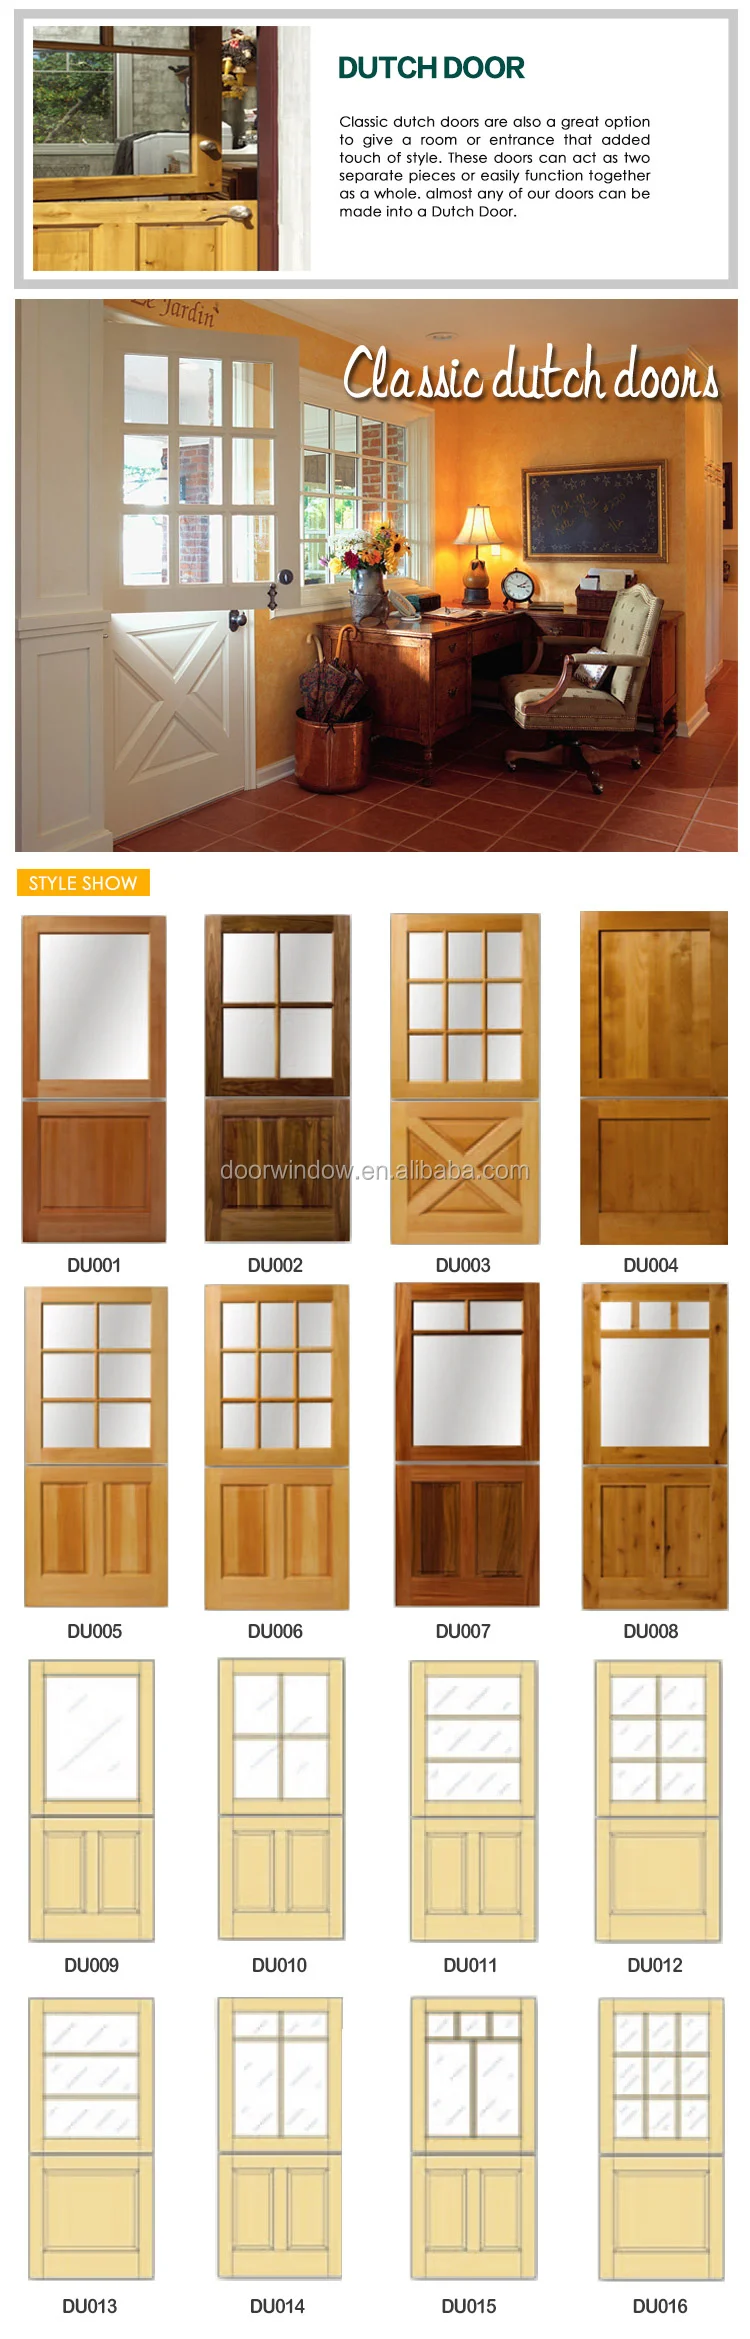 Hot sale 48 inches exterior doors wooden dutch door with hardware